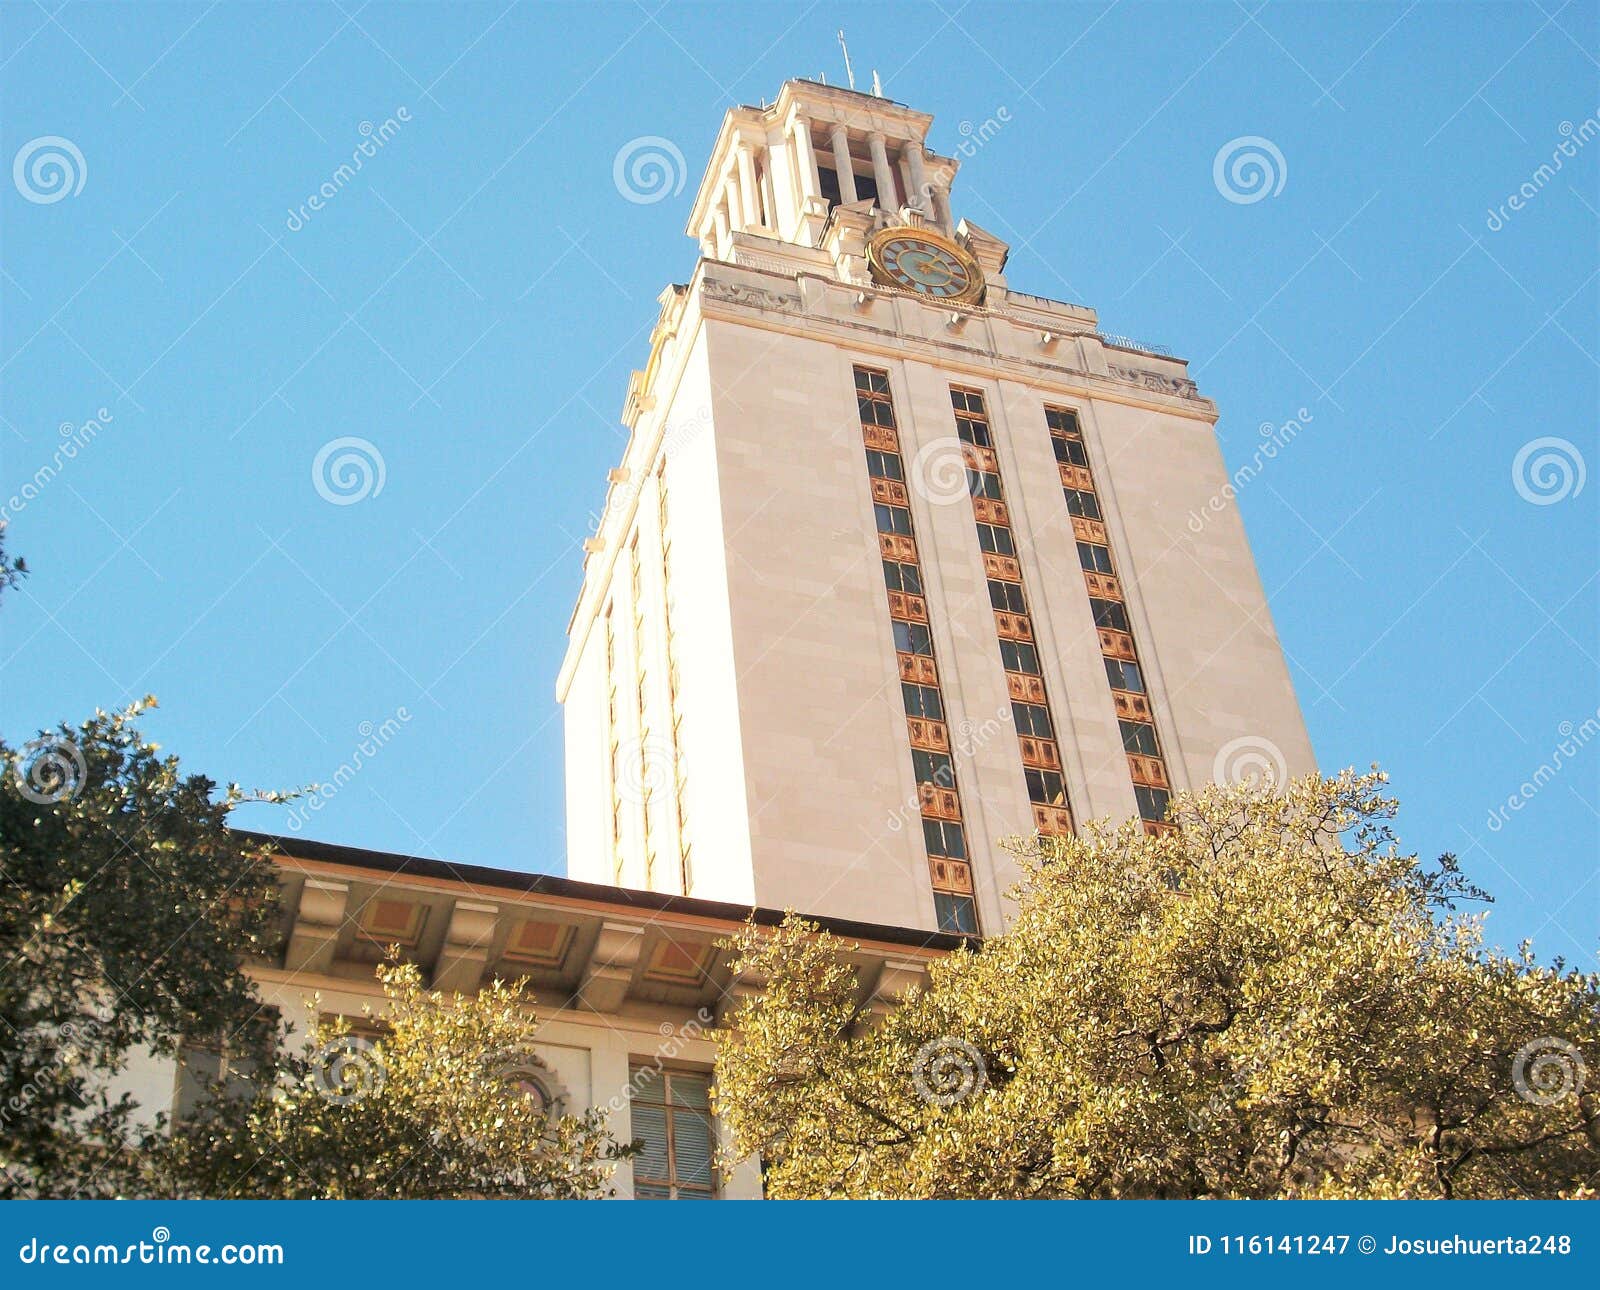 Πανεπιστήμιο του Τέξας στο Ώστιν. Αυτό το πορτρέτο απεικονίζει ενός από τα κτήρια του Πανεπιστημίου του Τέξας στο Ώστιν Είναι το κεντρικό κτίριο και βρίσκεται στην καρδιά του πανεπιστημίου Η εικόνα λήφθηκε τα τέλη Ιανουαρίου του 2018